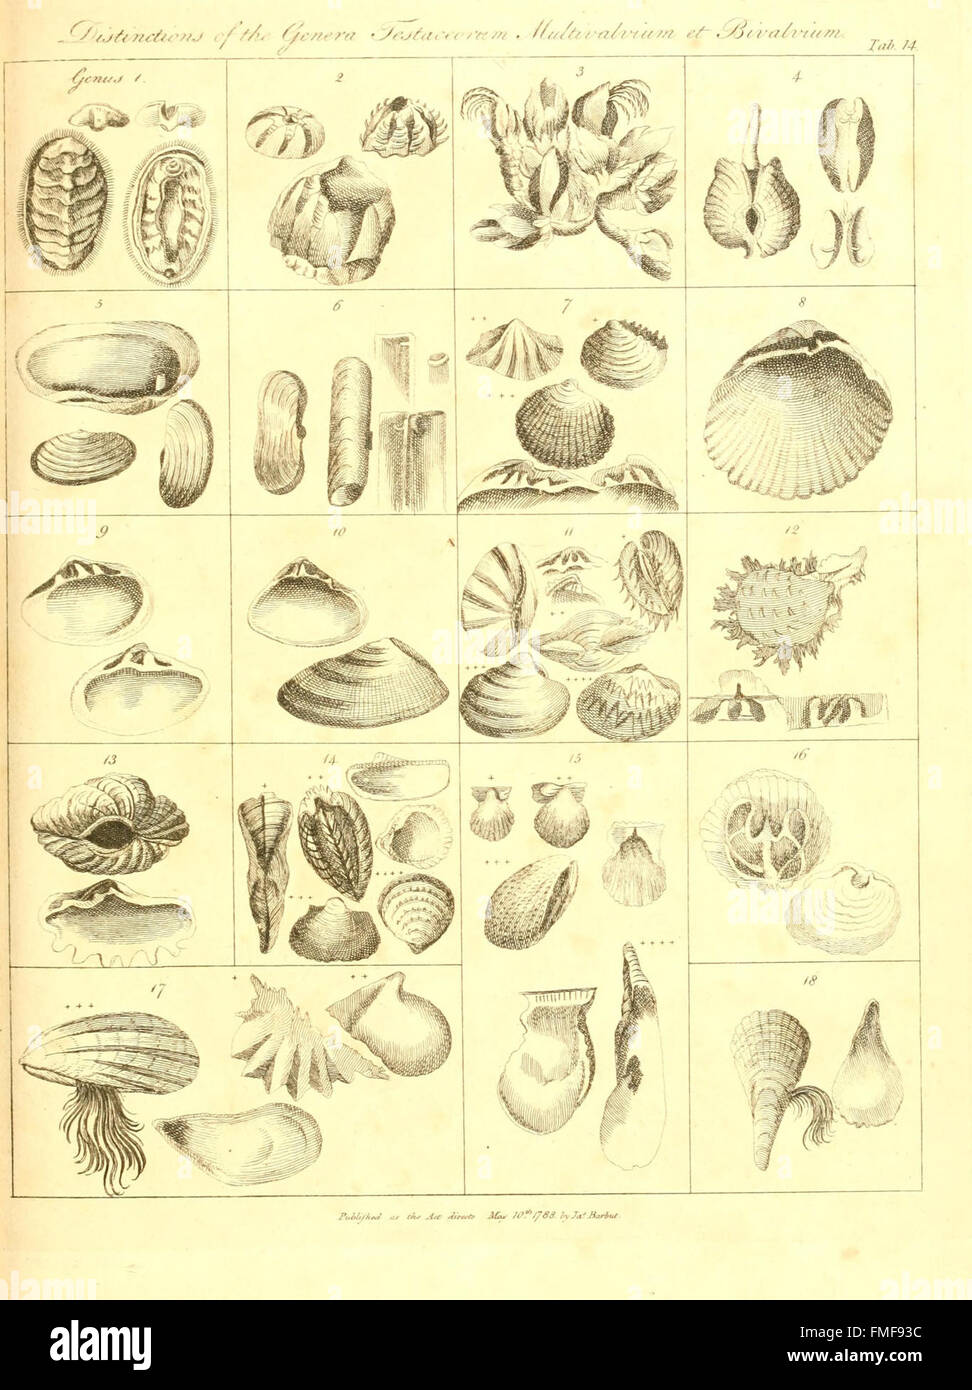 Die Gattungen Vermium am Beispiel von verschiedenen Proben von Tieren, die in den Aufträgen die Intestina enthaltenen et Mollusca Linnaei (Tab. 14) Stockfoto